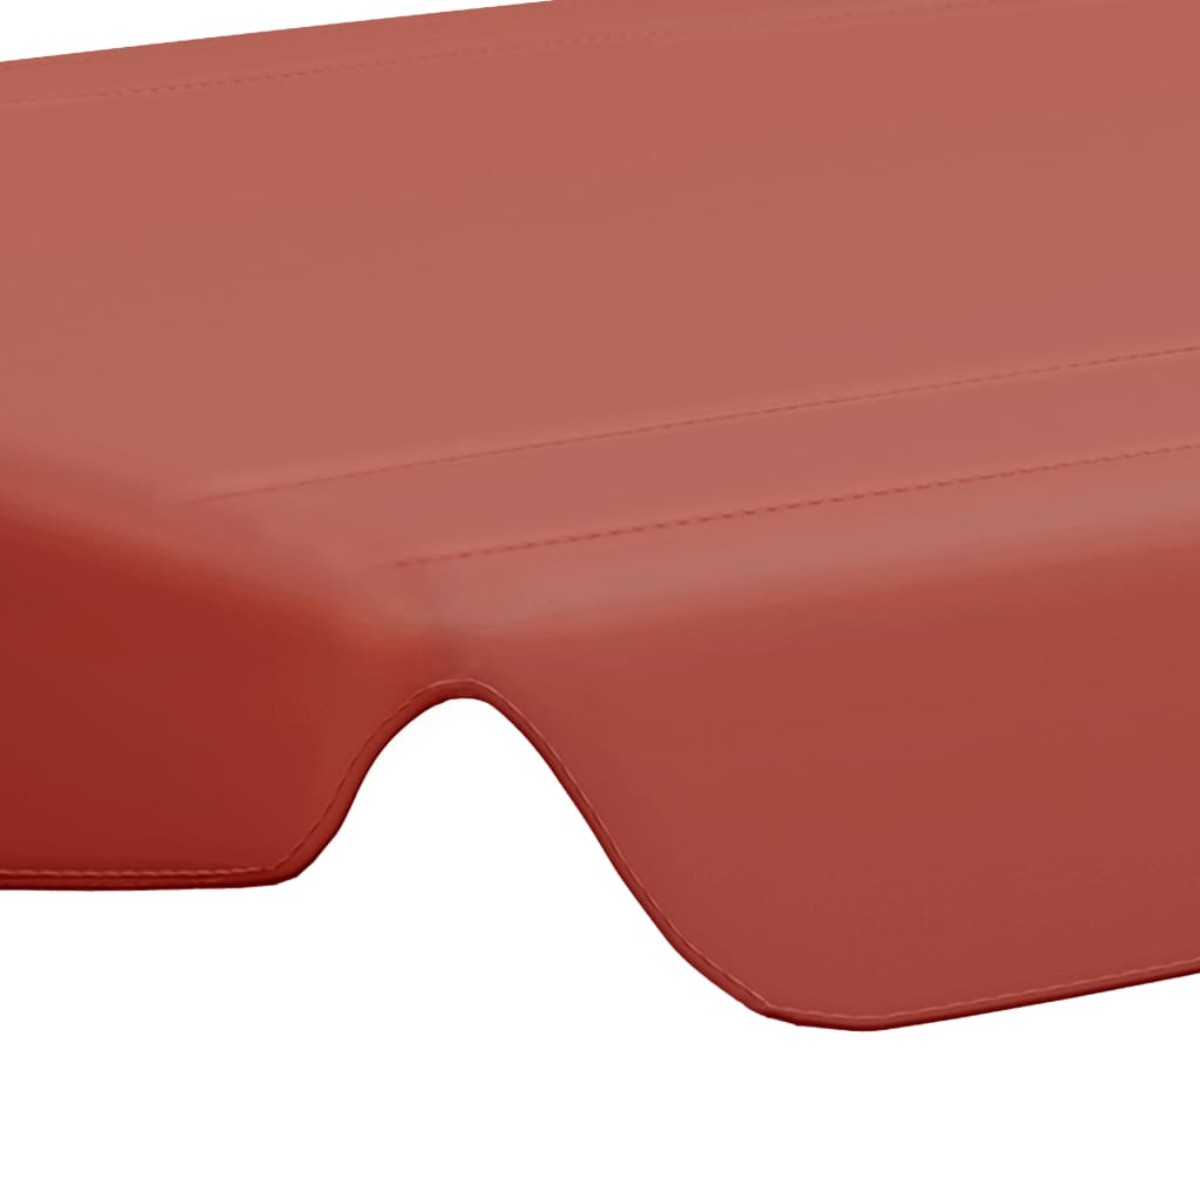 DOTMALL Hollywoodschaukel, Terracotta-Rot xl-312087 für Ersatzdach